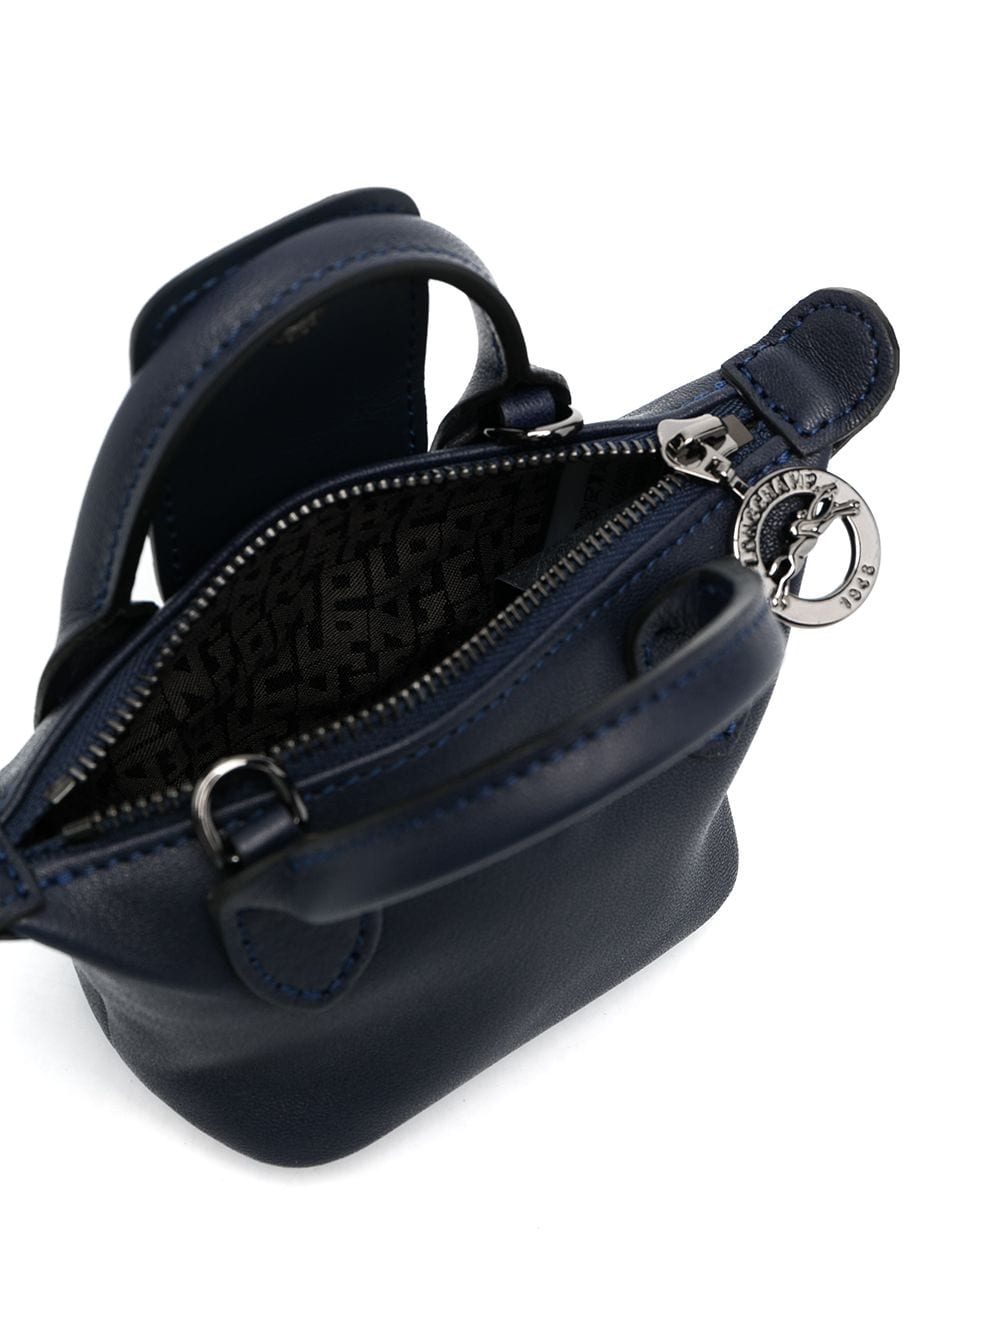 фото Longchamp маленькая сумка через плечо le pliage cuir